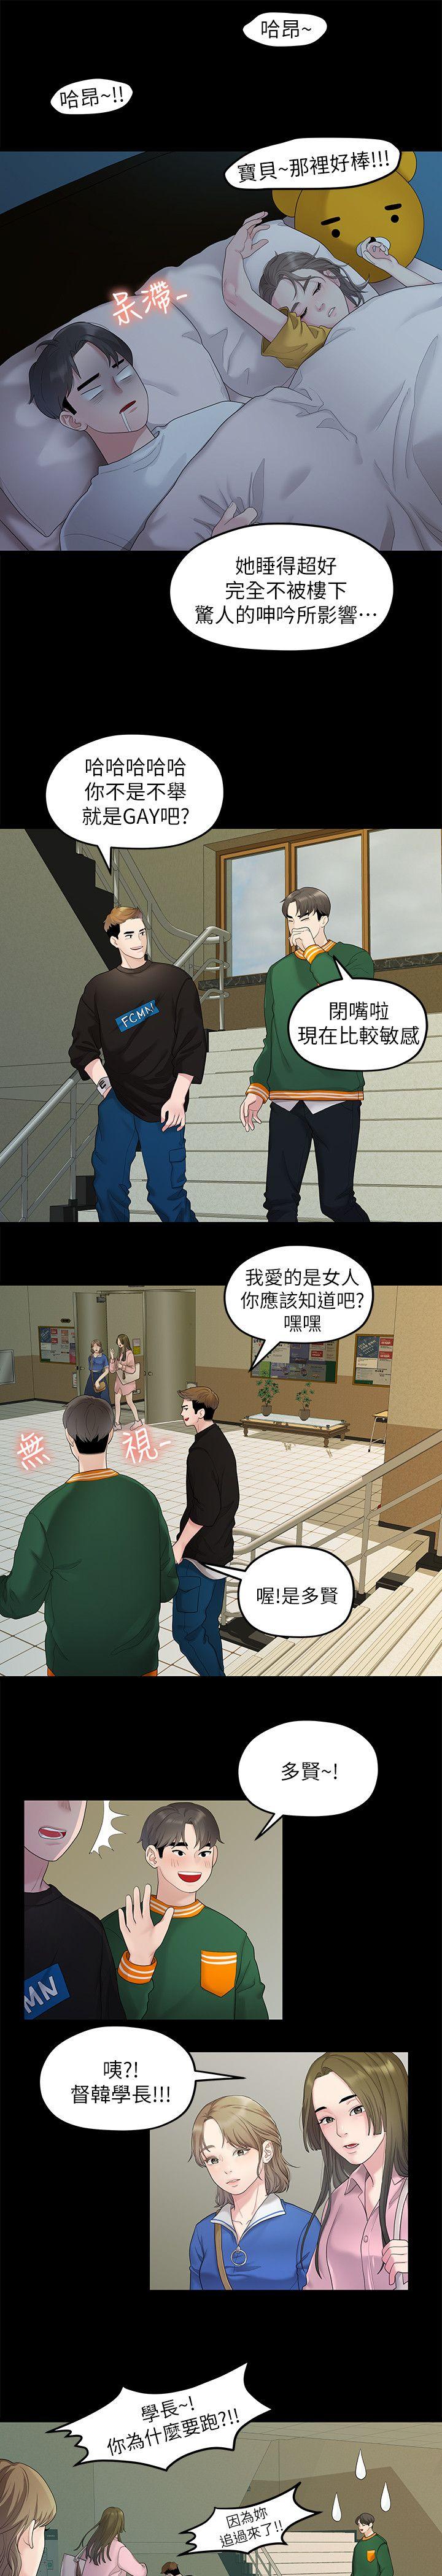 韩国污漫画 我們的非常關系 第26话-从学长进化为相佑哥的那天 16